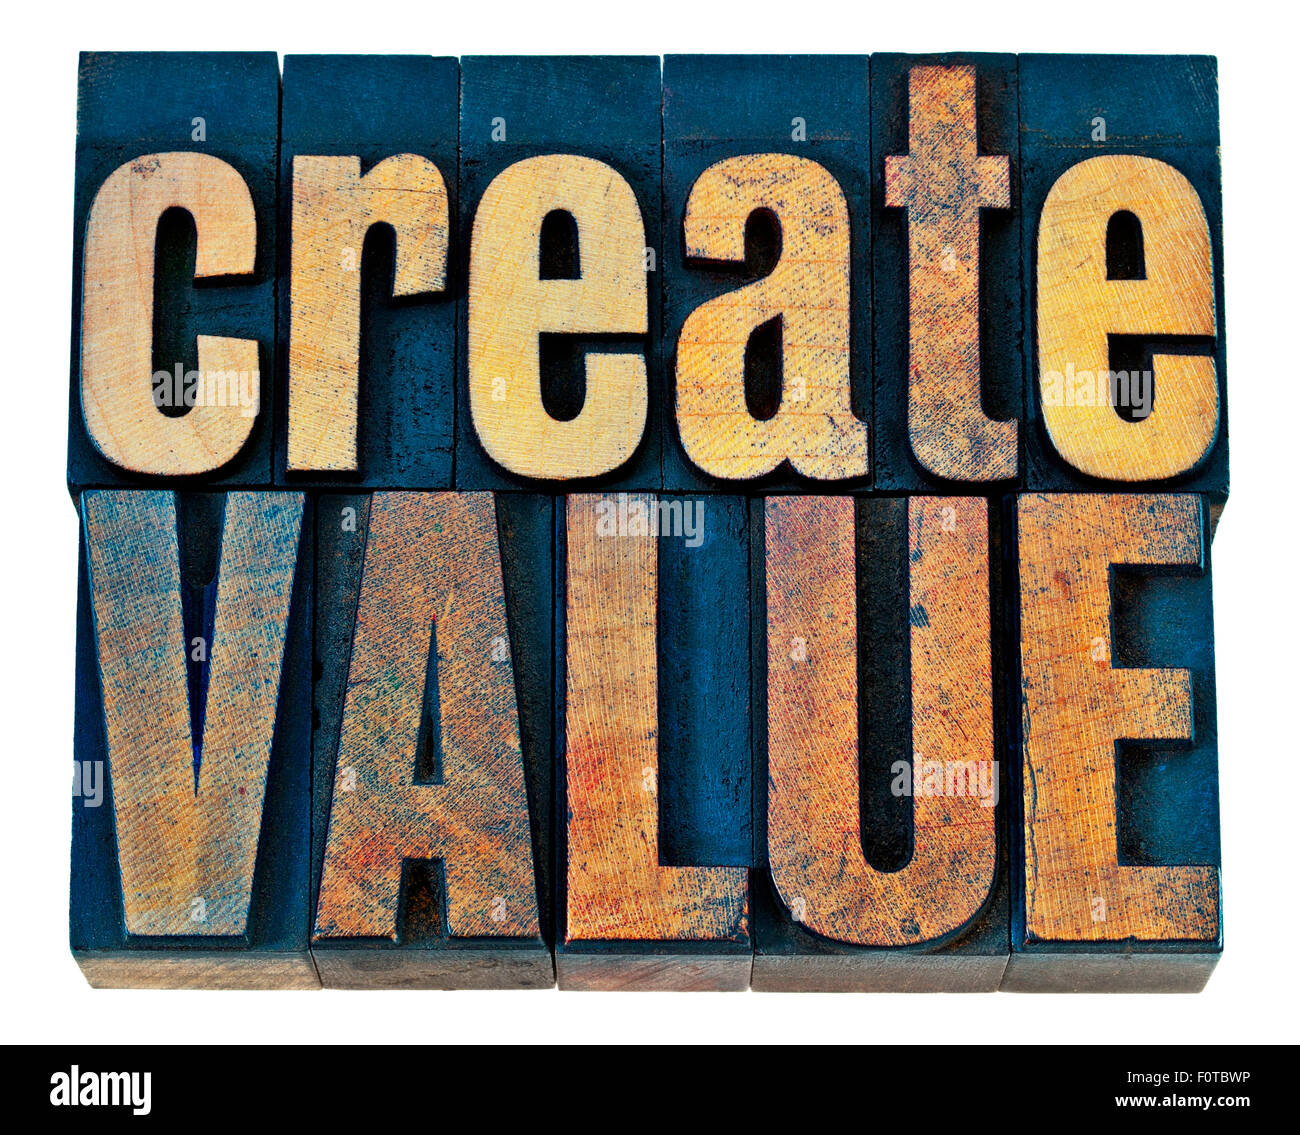 Creare valore tipografia - ispirazione concetto - parole isolate in rilievografia vintage tipo legno blocchi Foto Stock